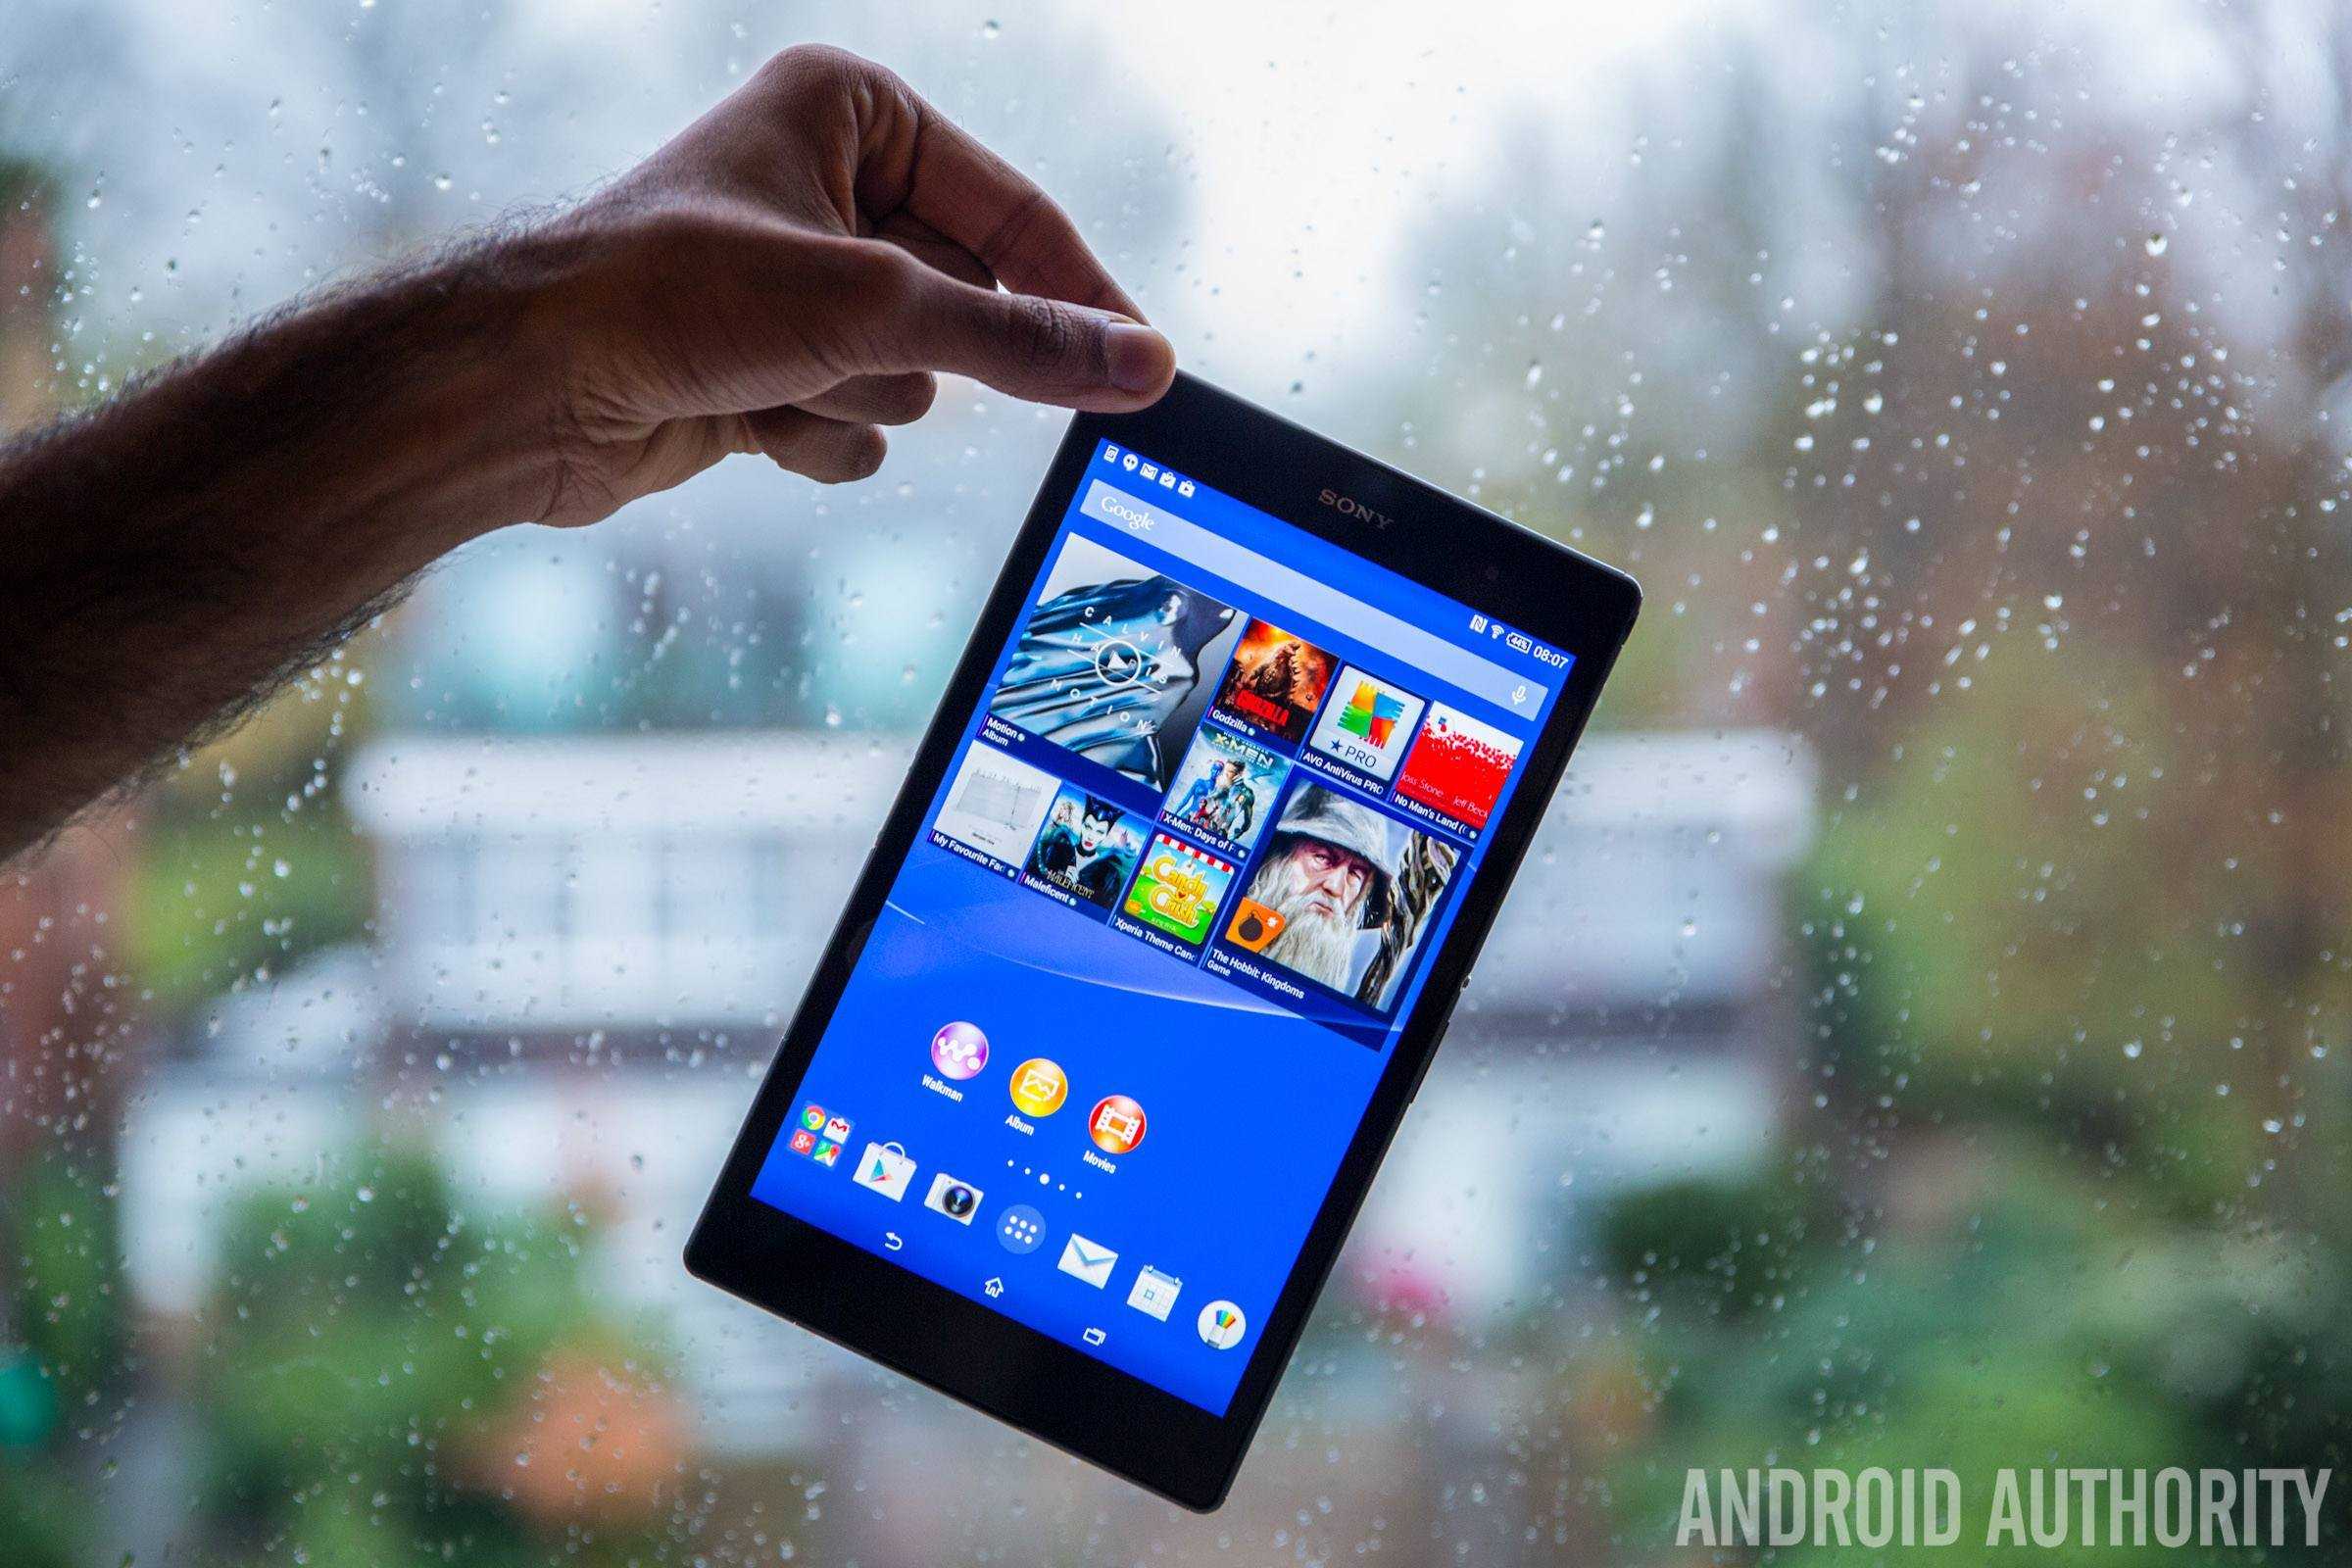 Планшет Sony Xperia Tablet S - подробные характеристики обзоры видео фото Цены в интернет-магазинах где можно купить планшет Sony Xperia Tablet S